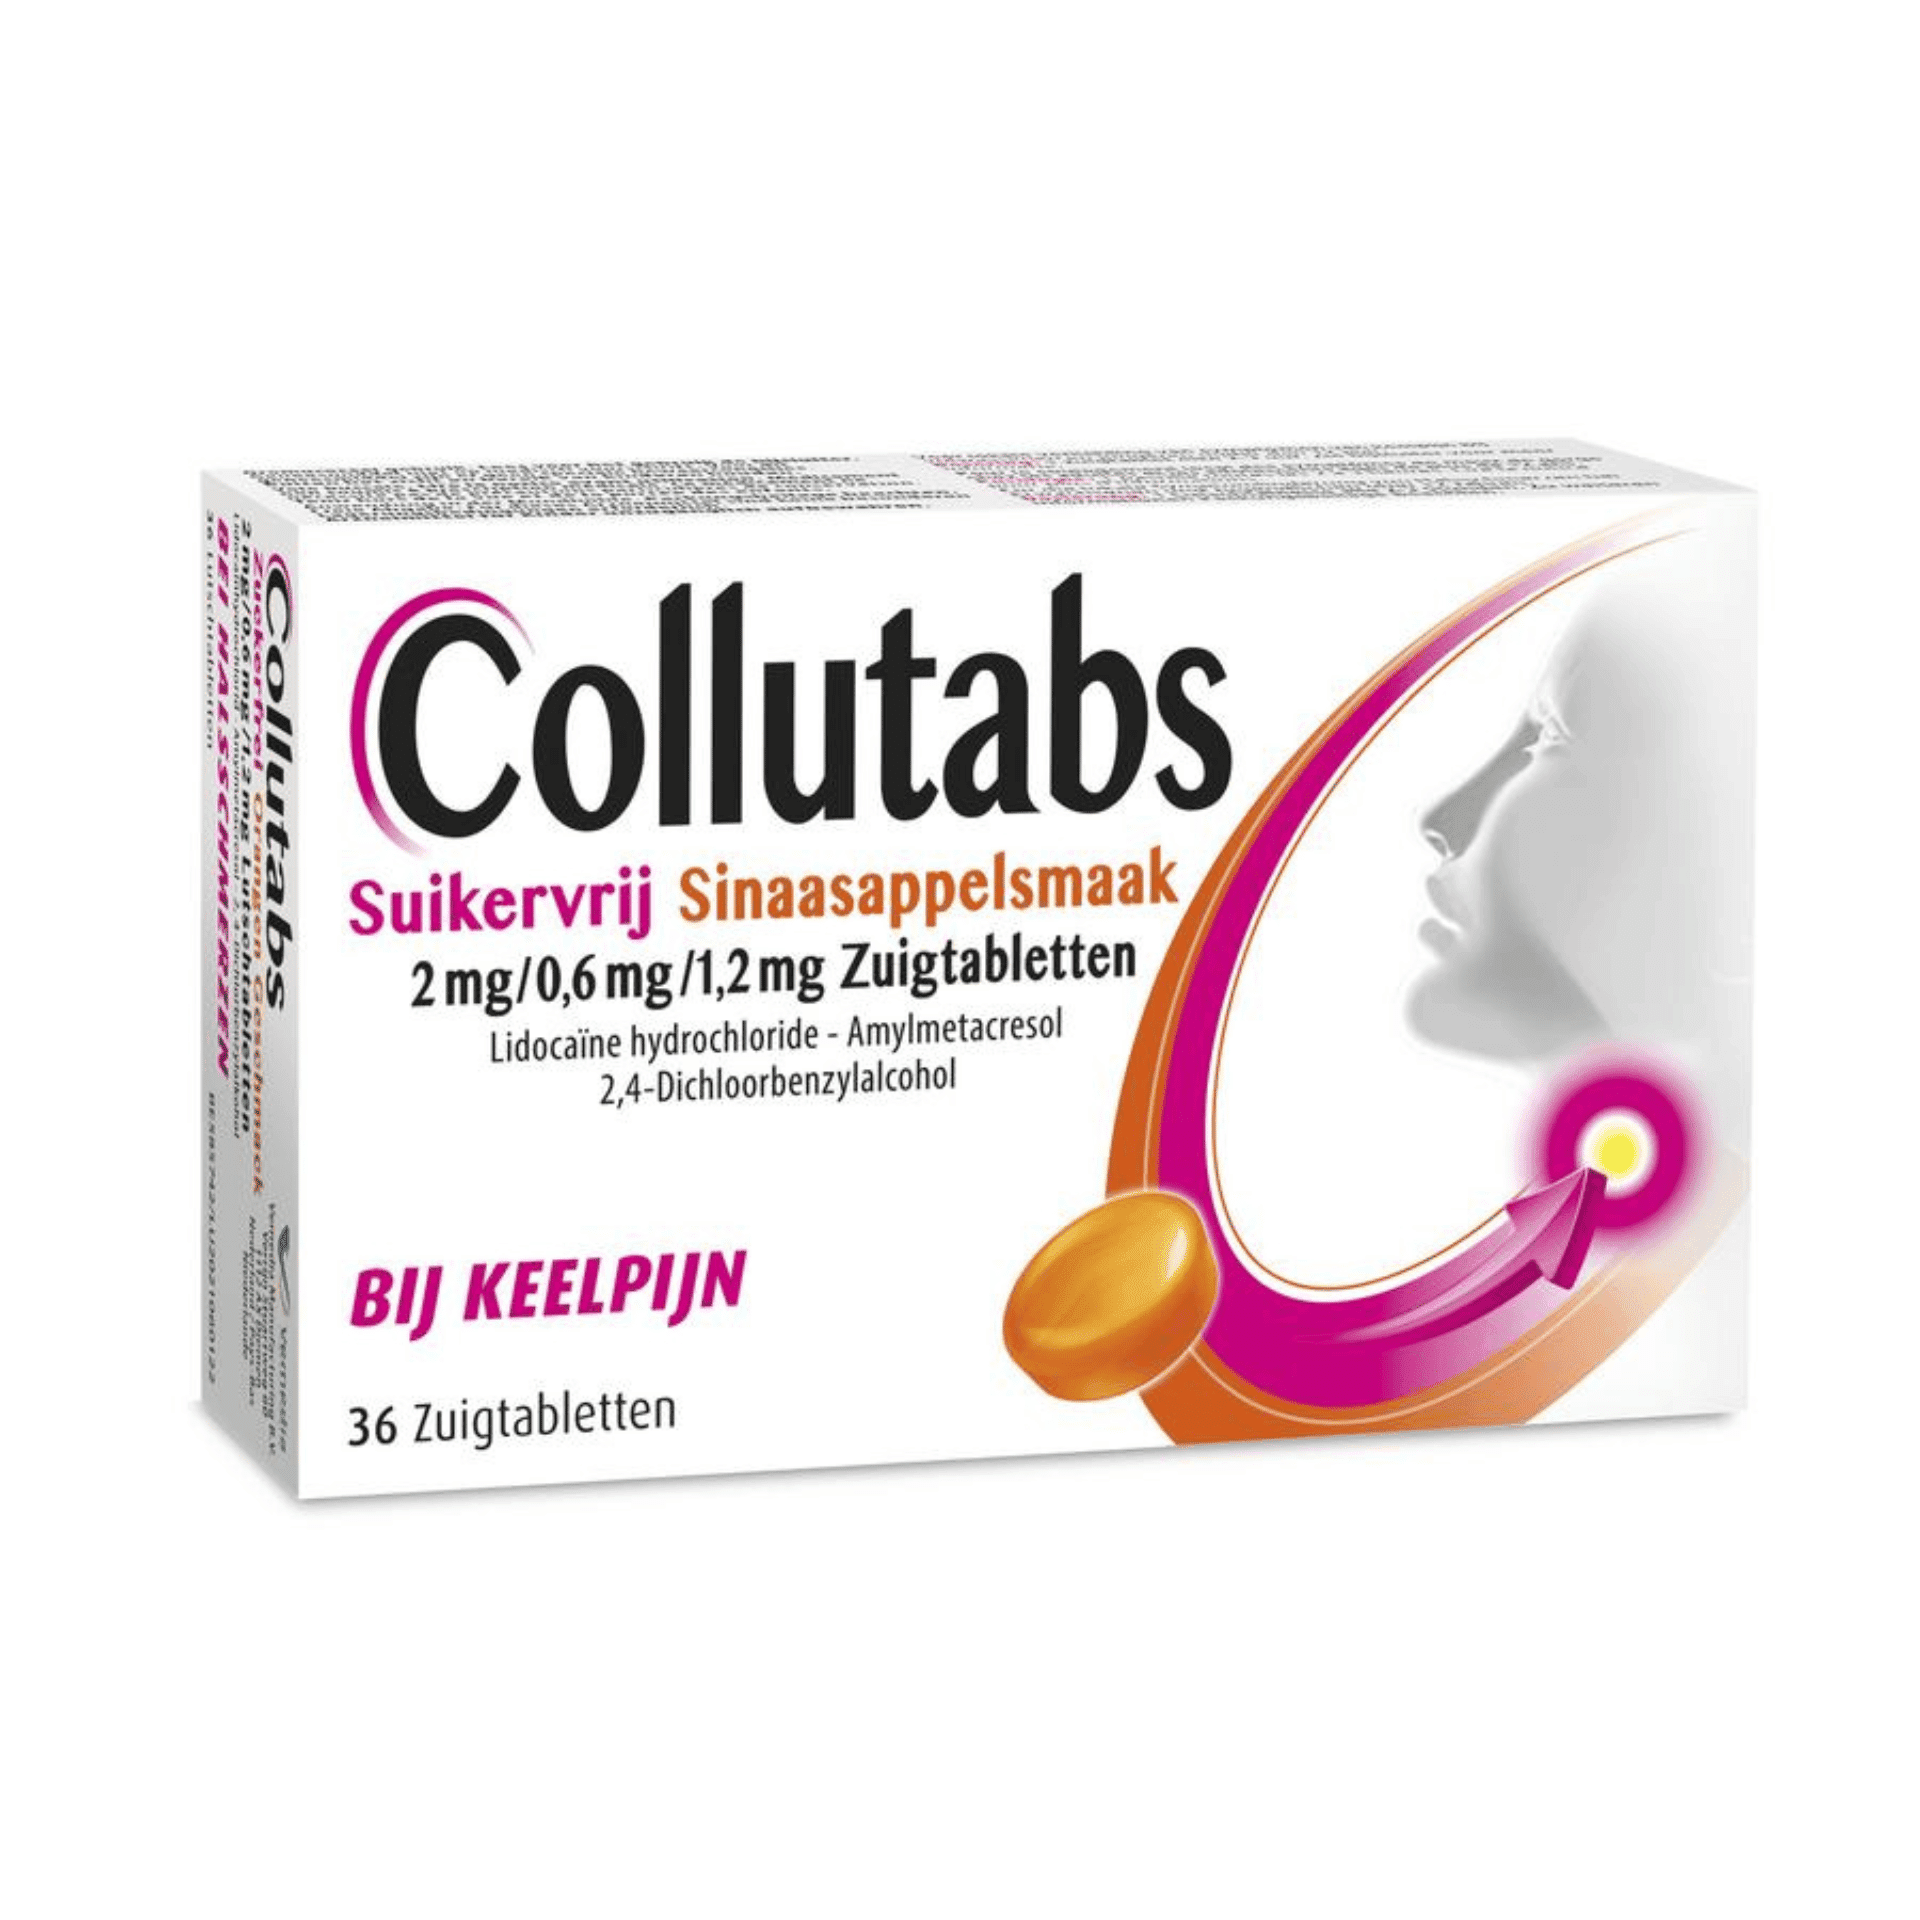 Collutabs Suikervrij Sinaasappelsmaak 2 mg/0,6 mg/1,2 mg